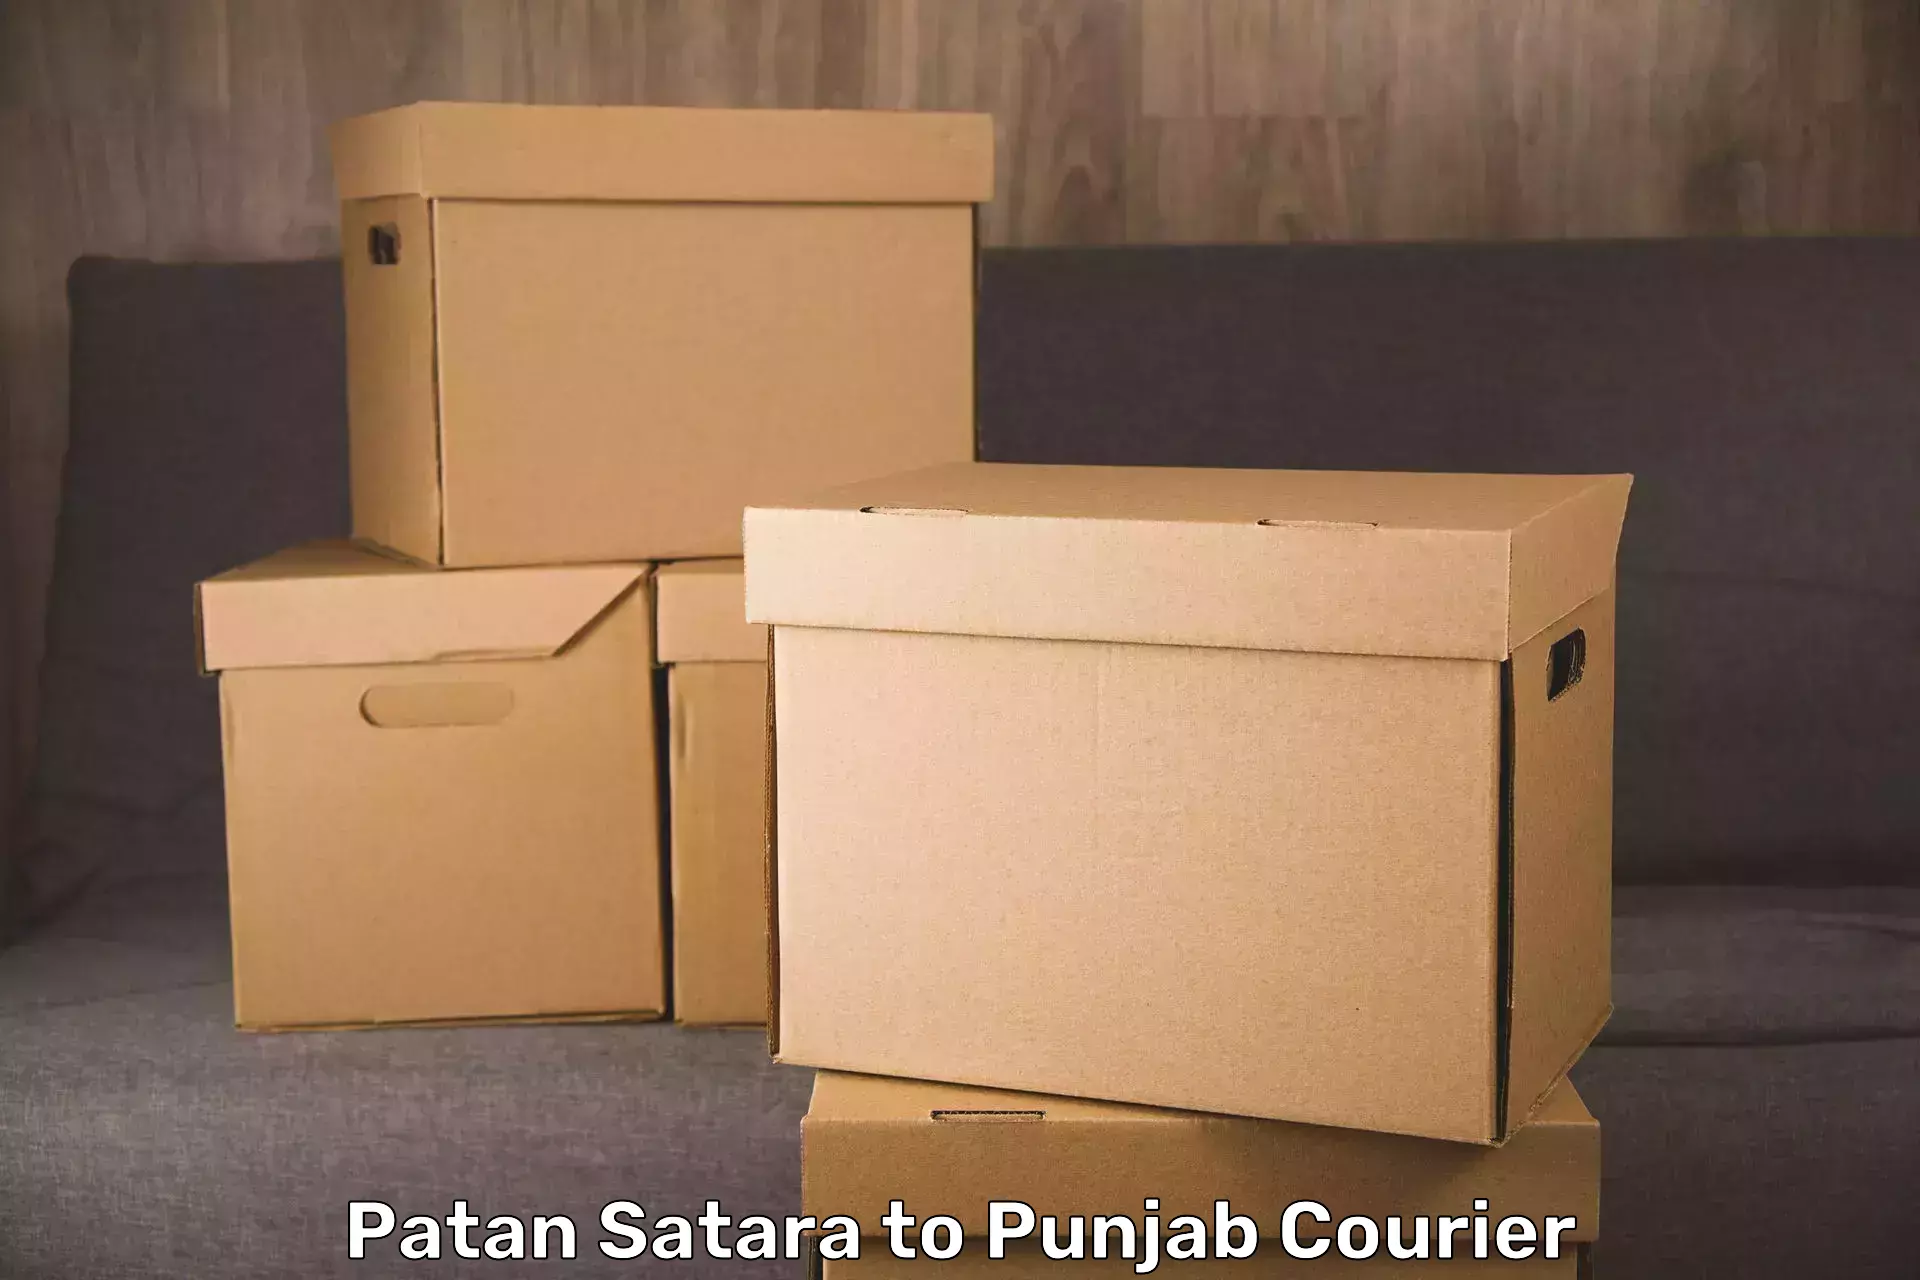 Luggage shipment tracking Patan Satara to Punjab